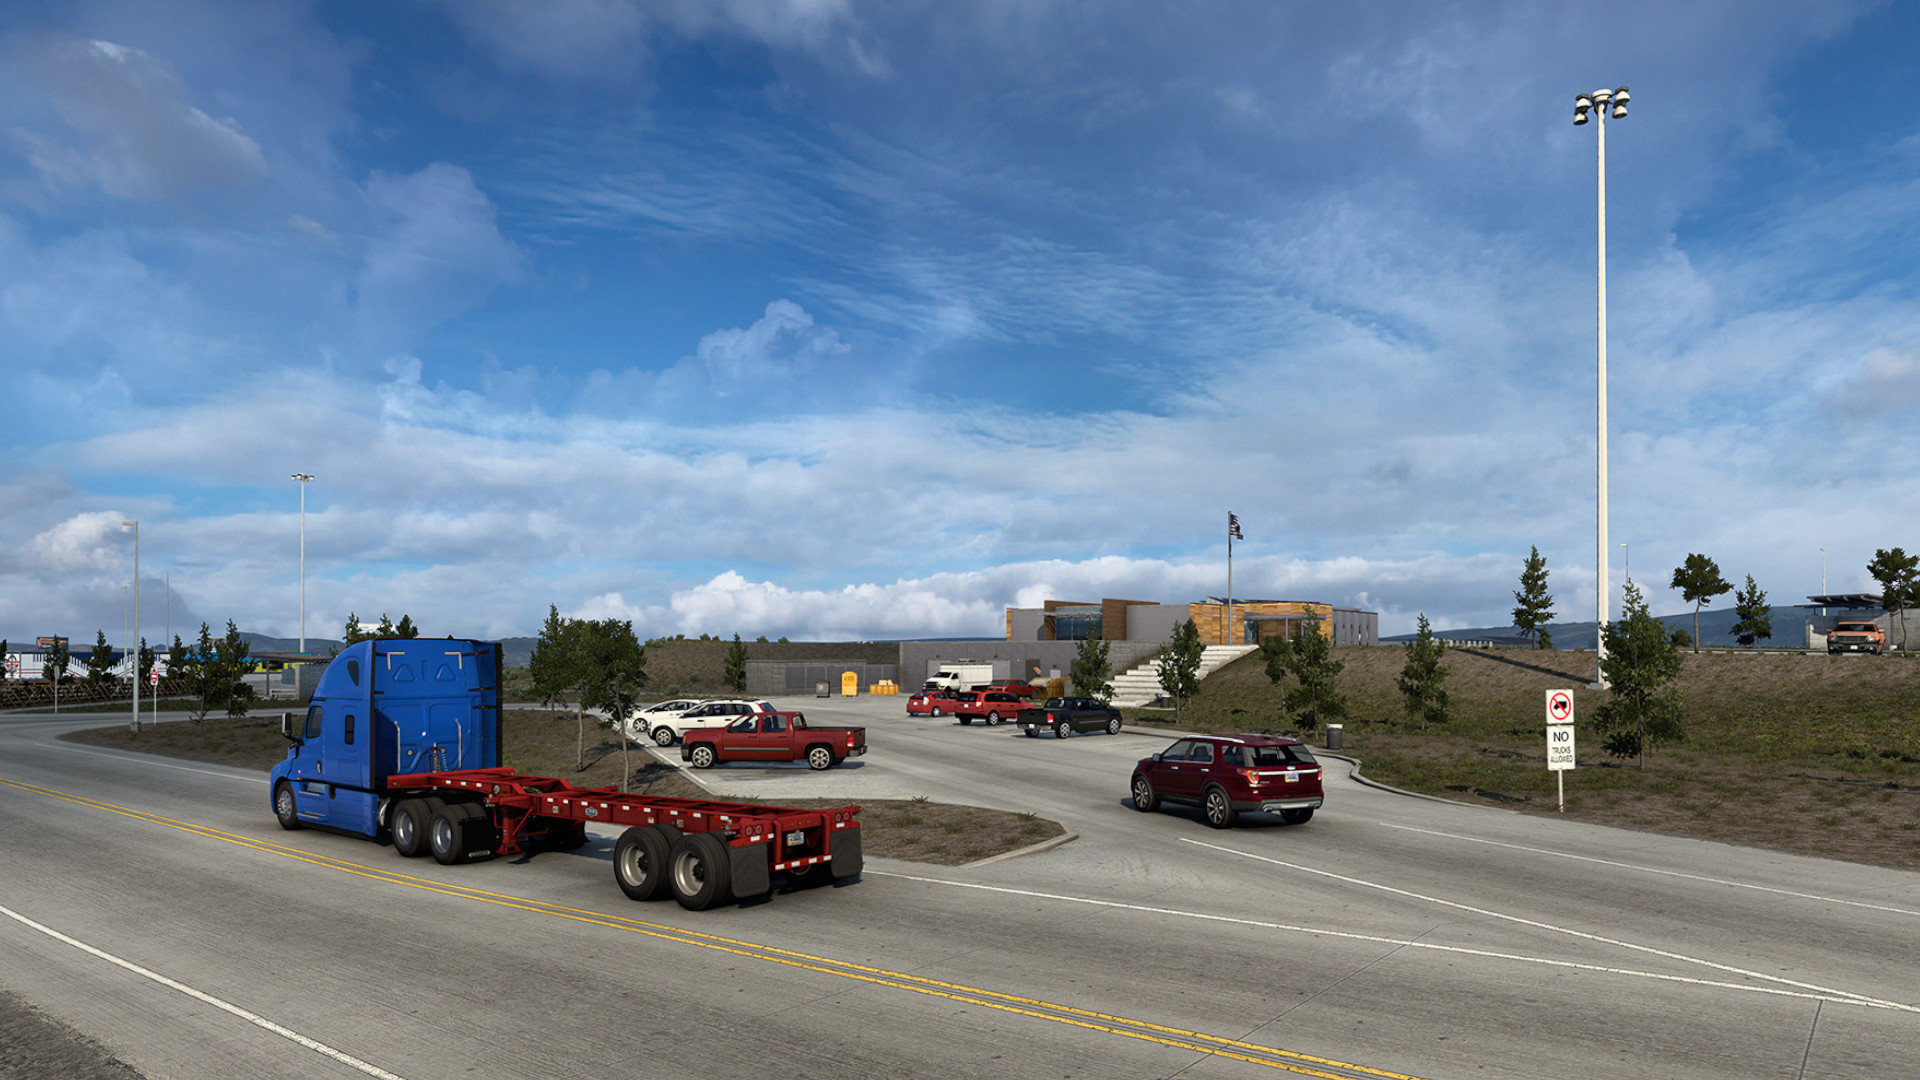 Ganito ang hitsura ng $16 million rest stop ng Wyoming sa American Truck Simulator